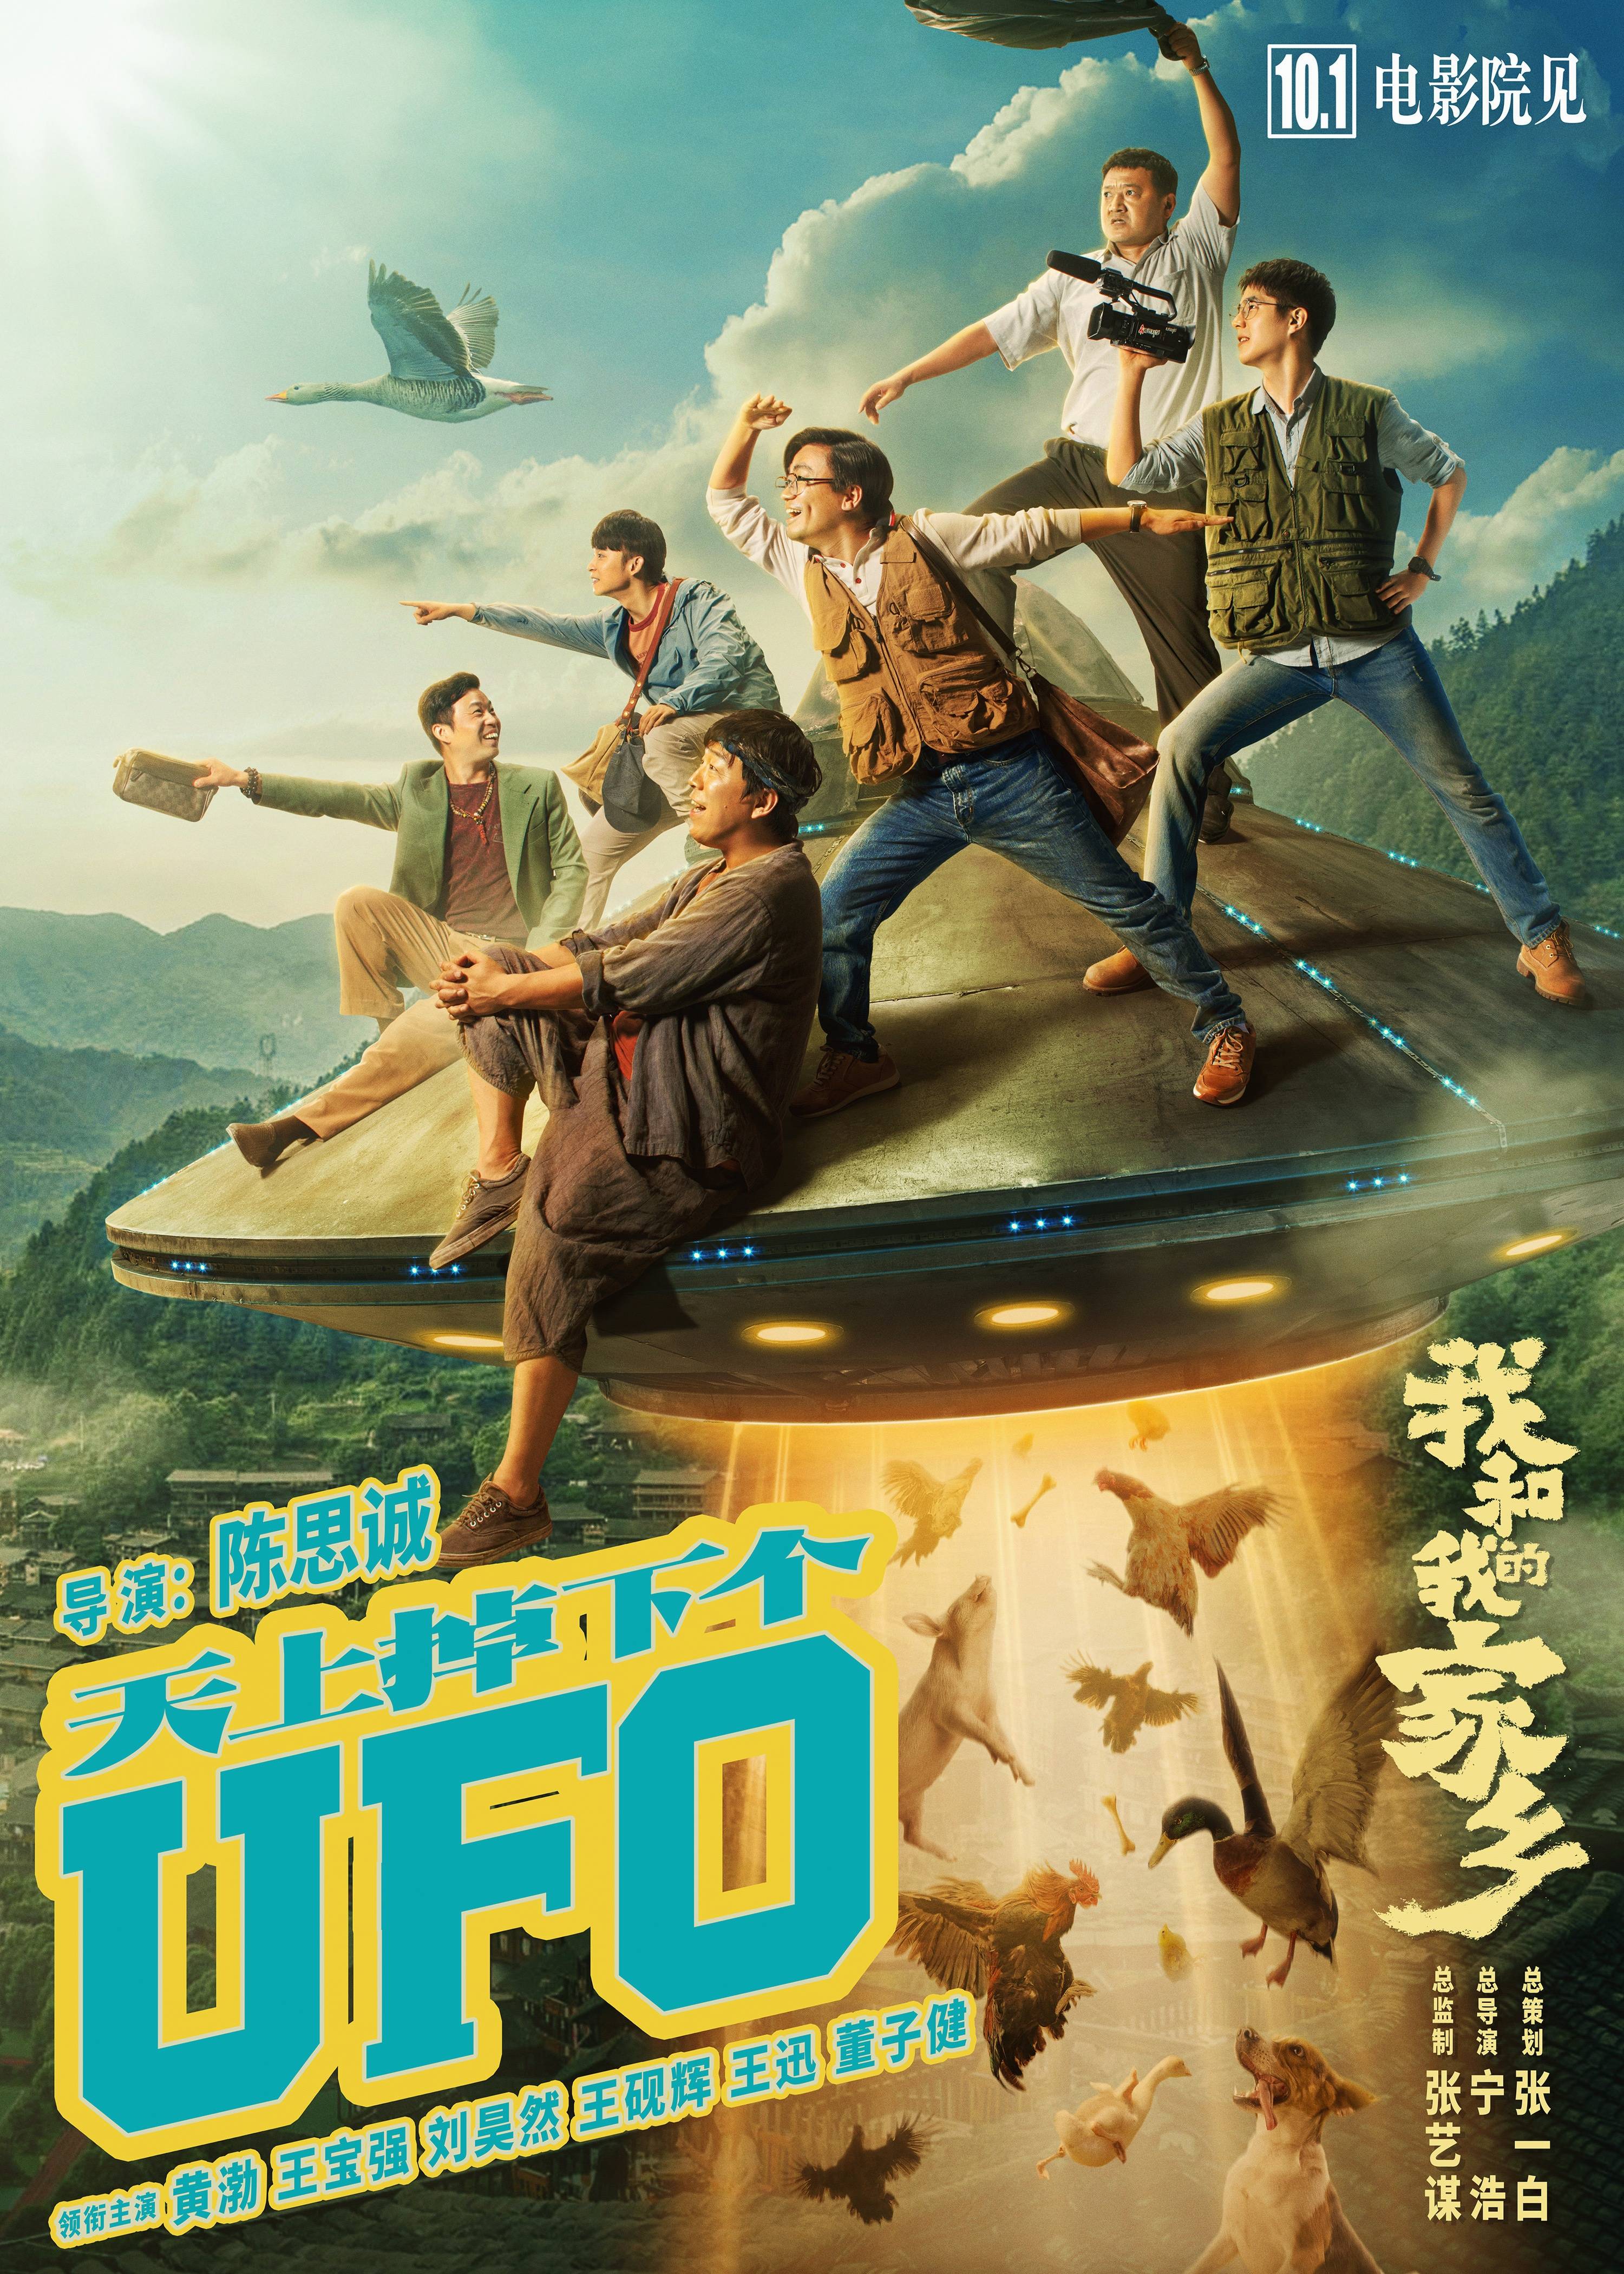 华语电影排行榜前十名_华语电影海外票房排行榜前十,功夫影星屠榜,动作片市场前景广阔